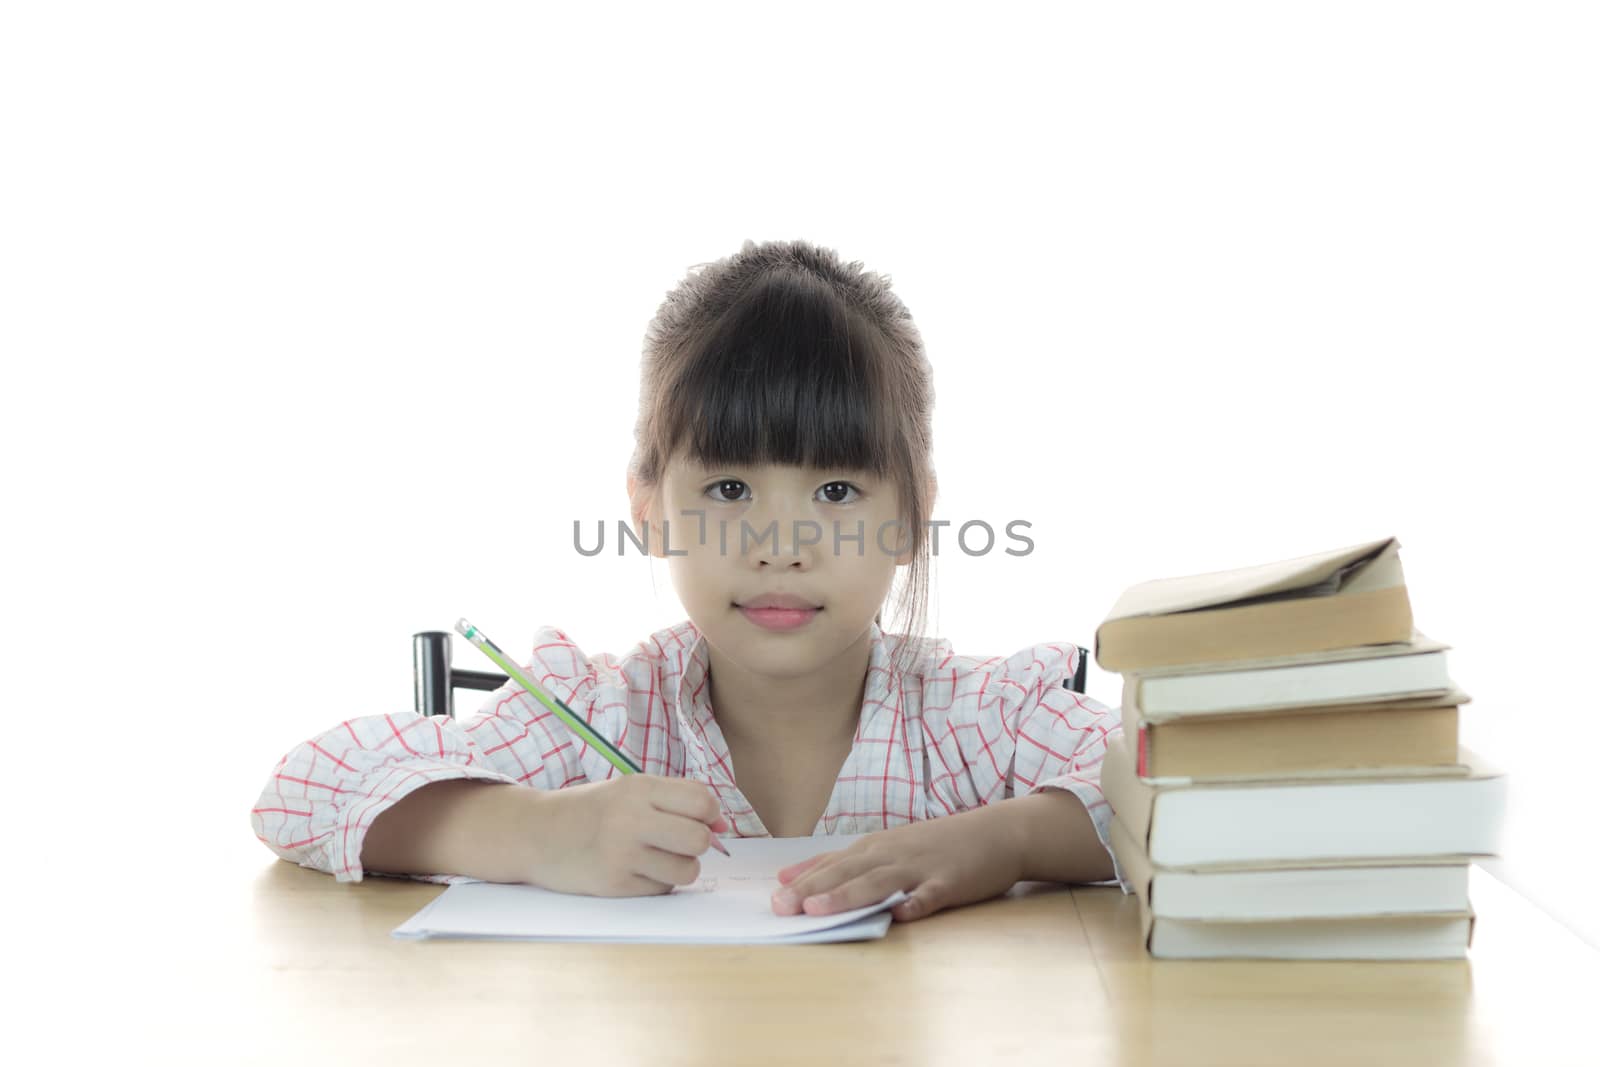 schoolgirl works on her homework by wyoosumran